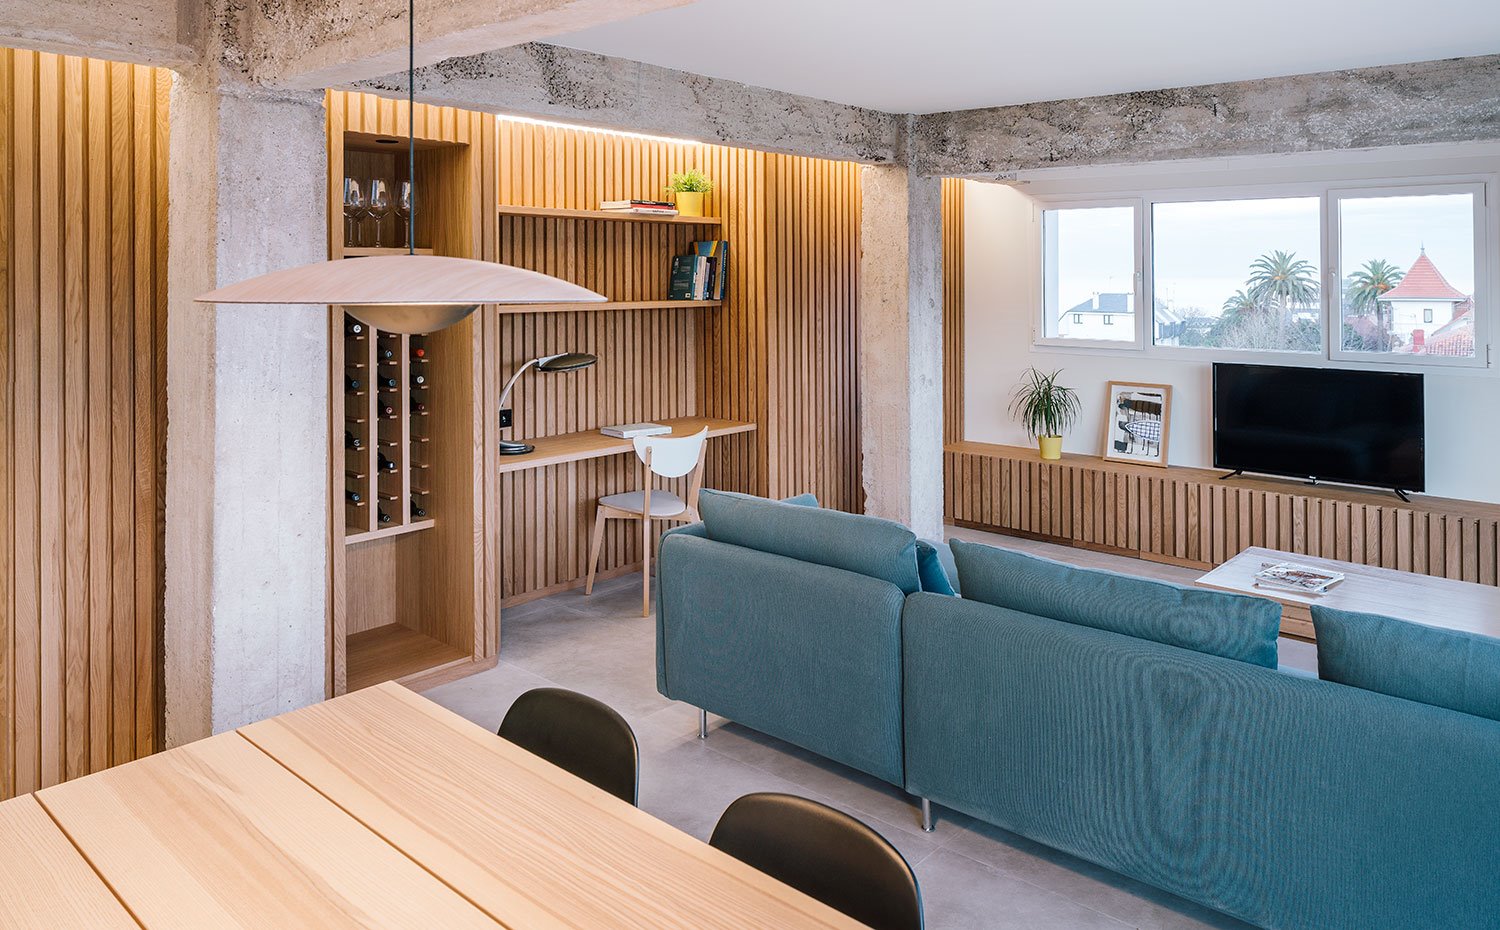 Zona de estar con comedor, salón y zona de trabajo con frente panelado de madera